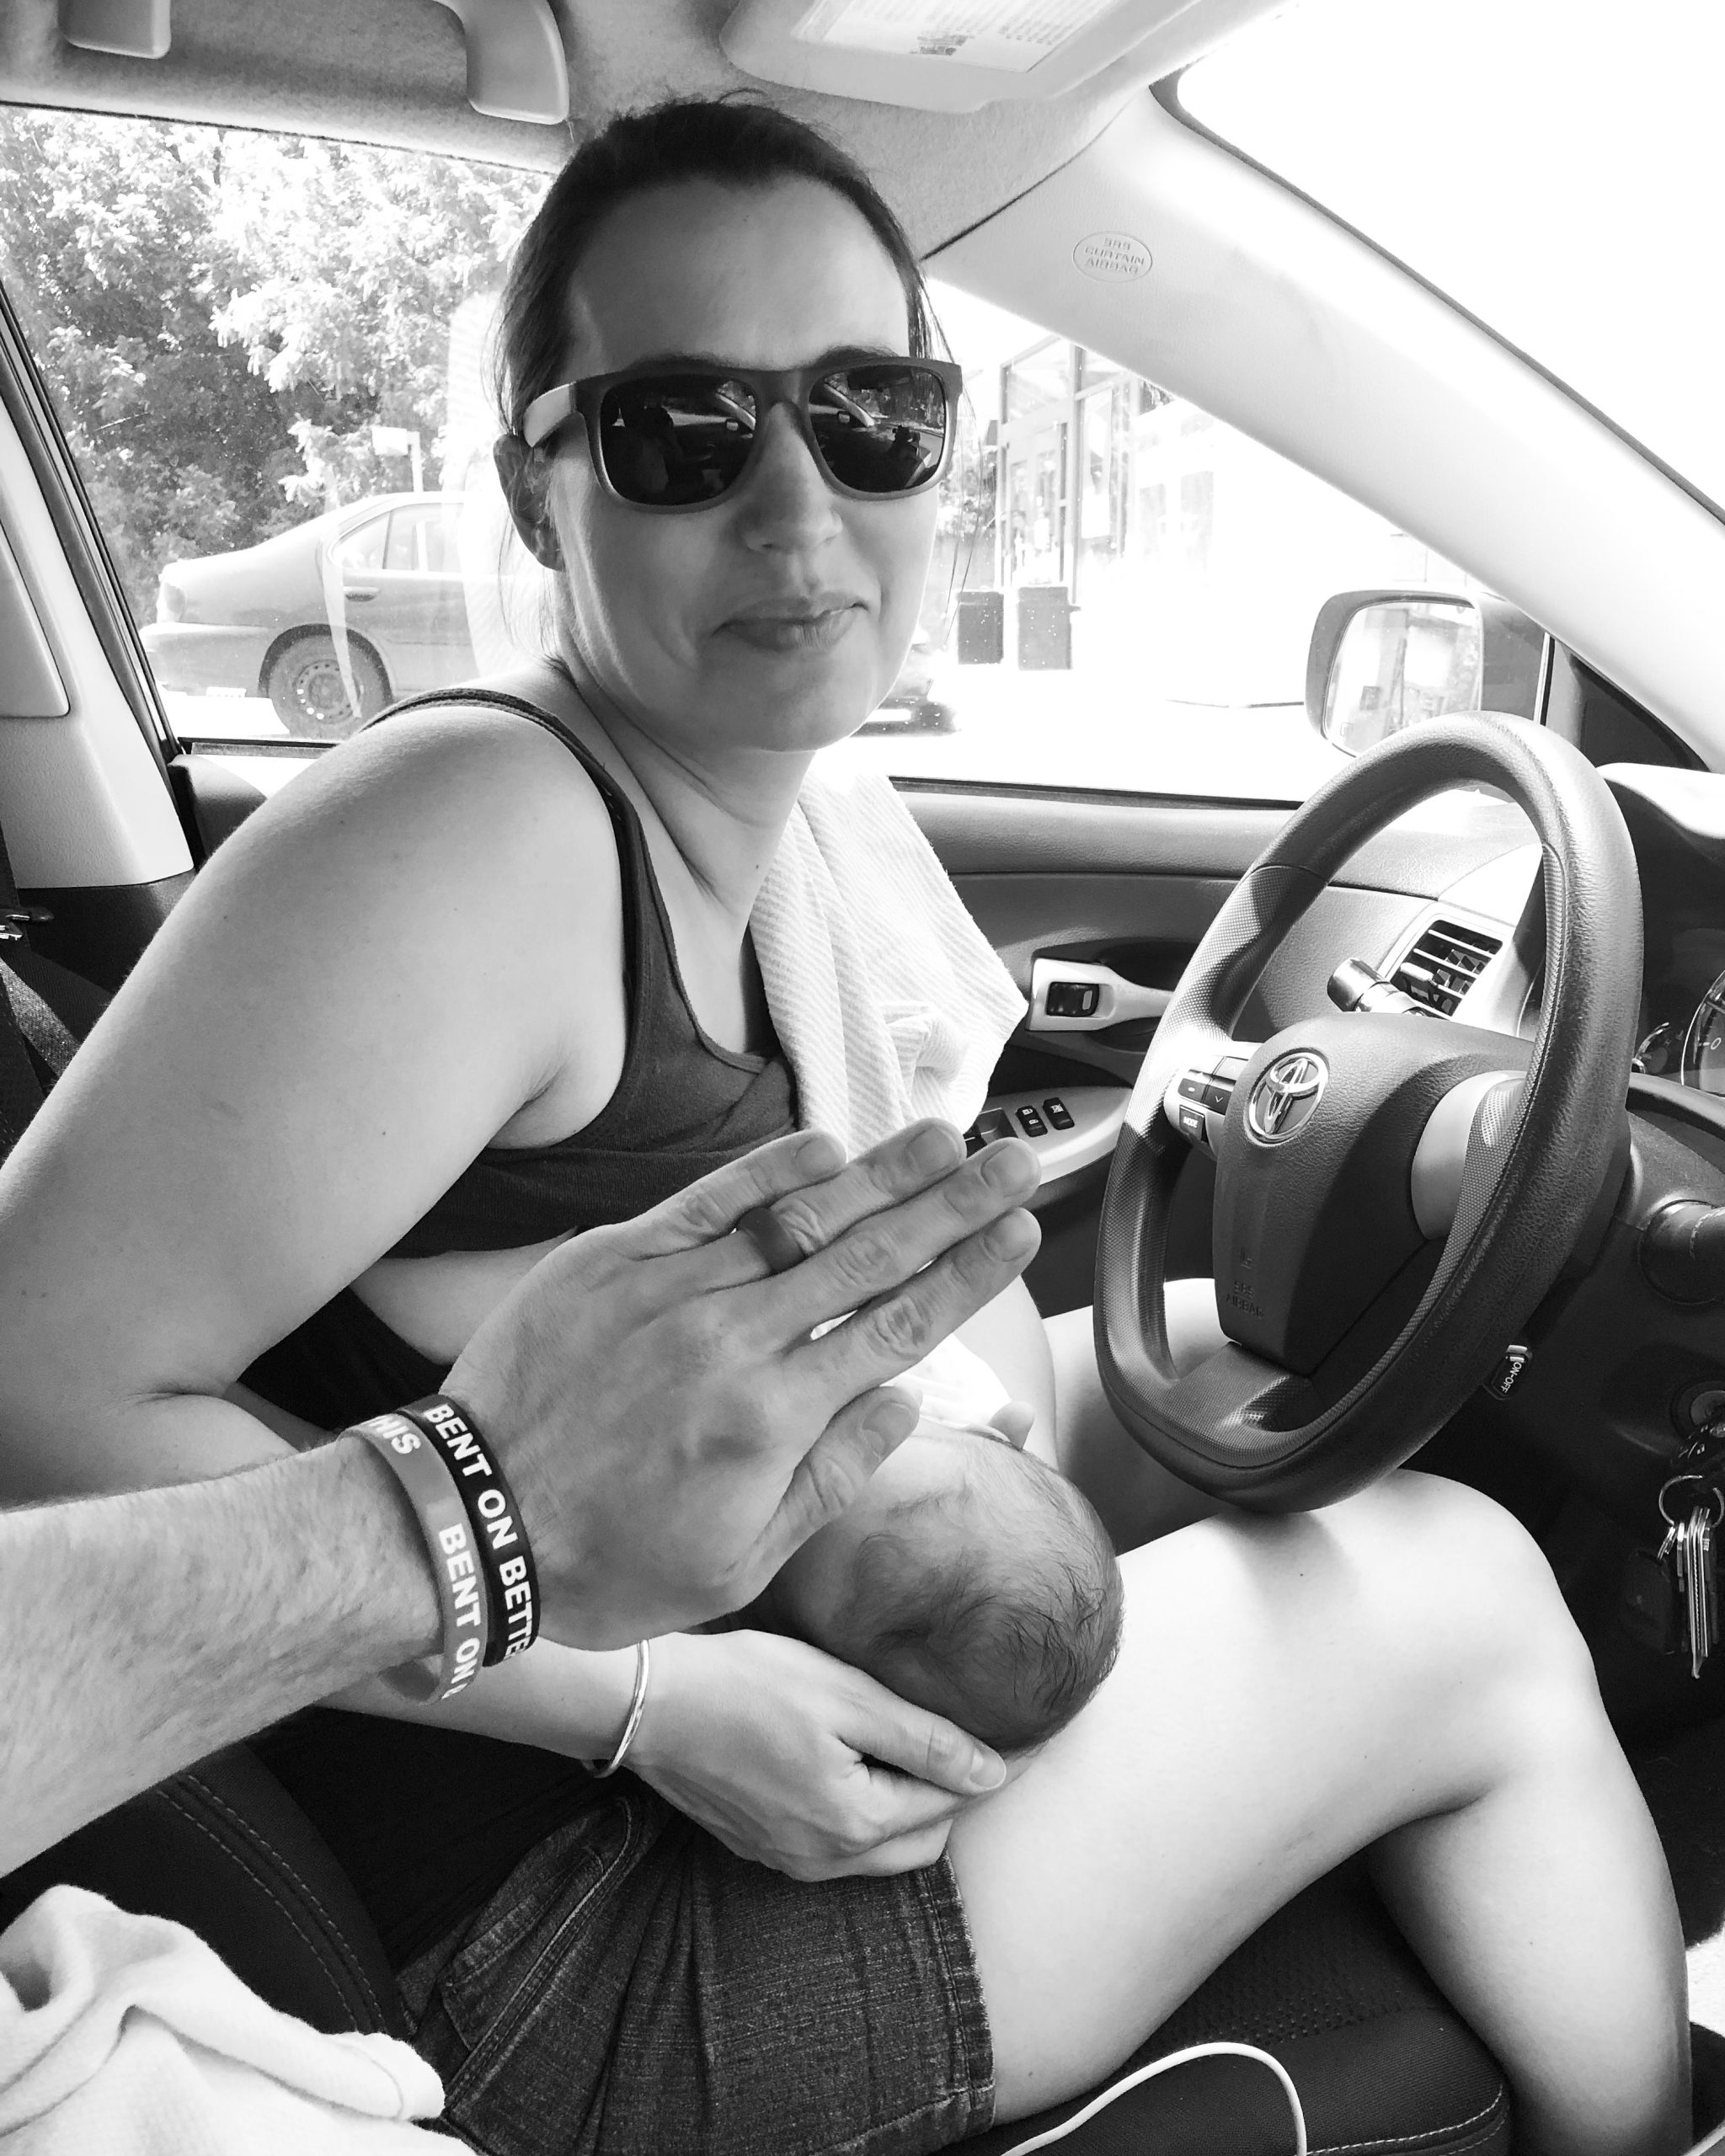 a woman breastfeeding in a car